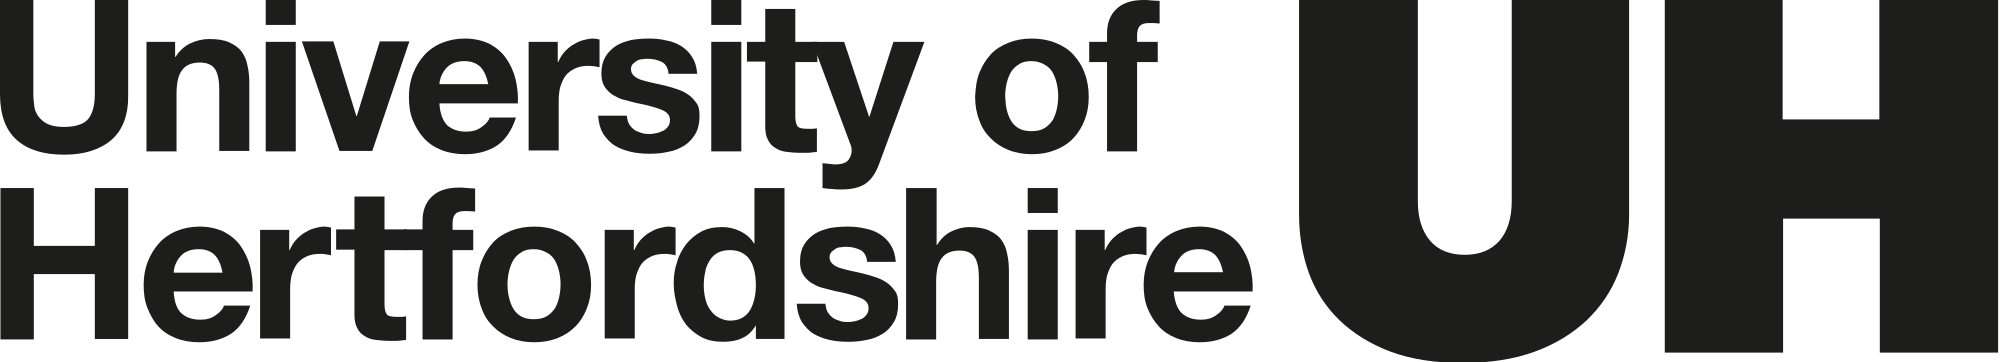 University_of_Hertfordshire_Logo.svg